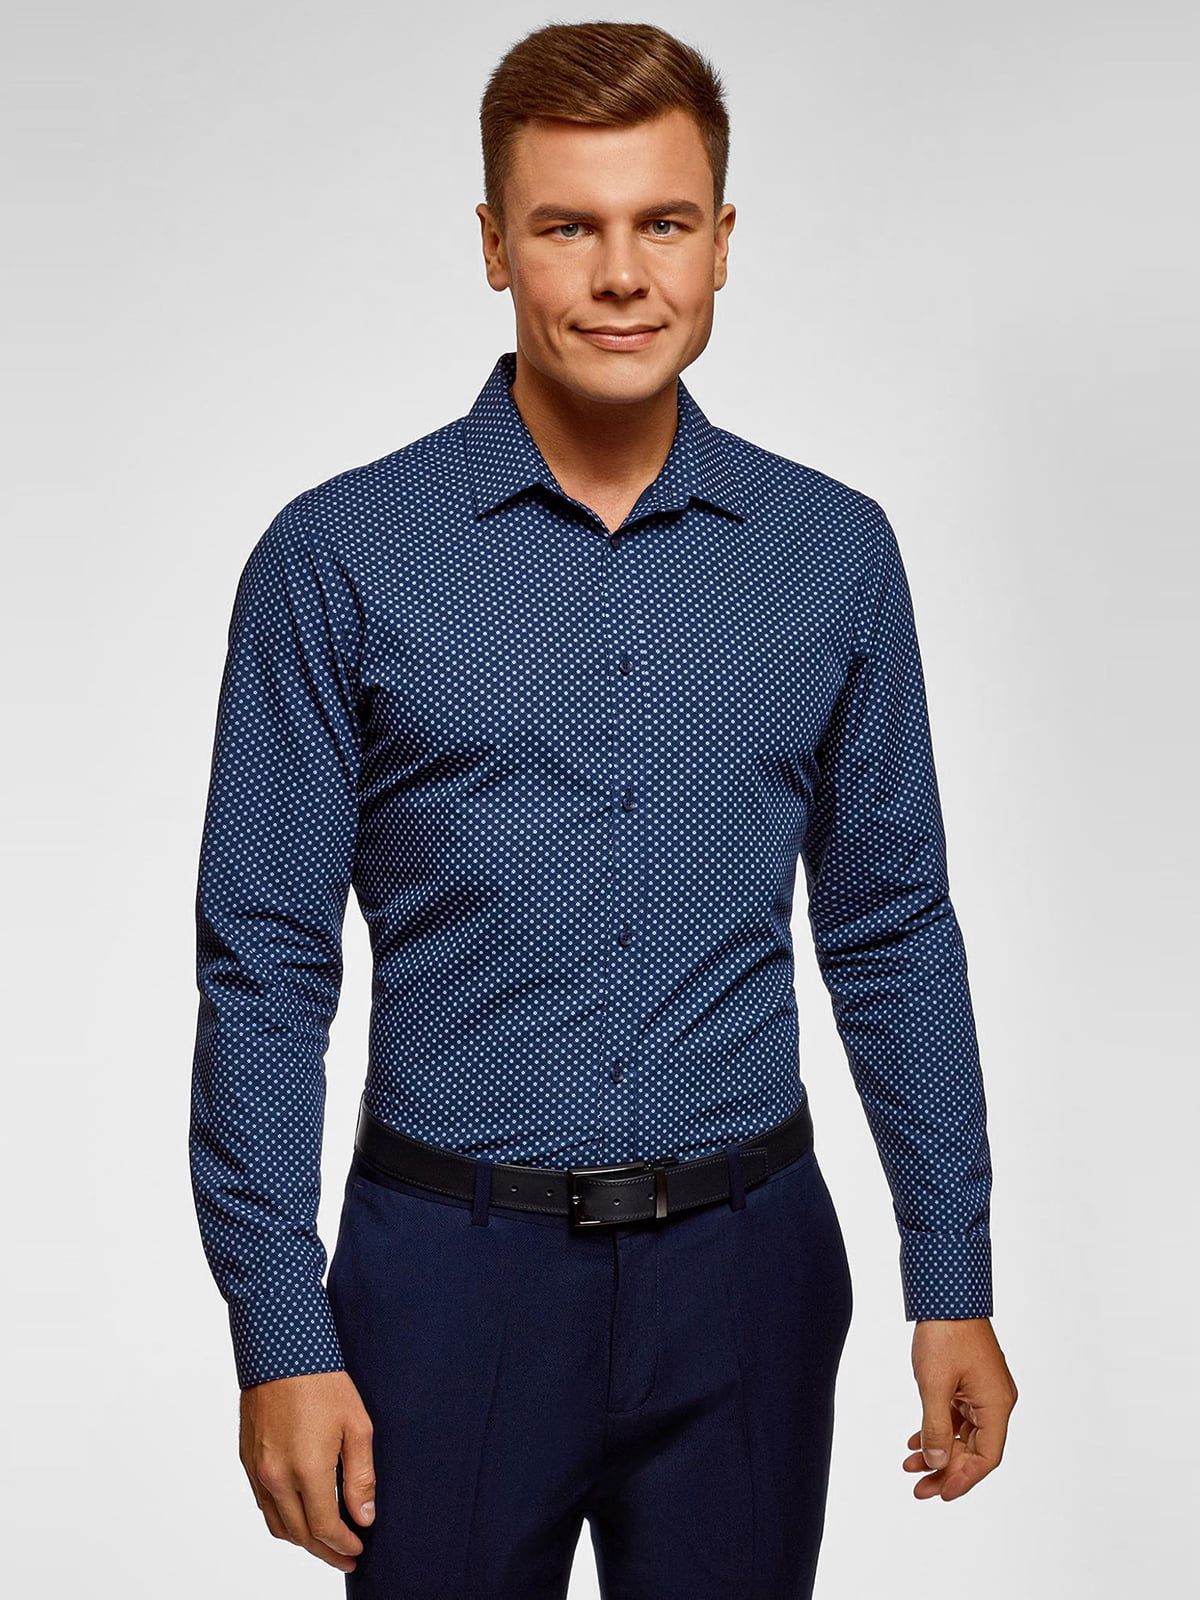 Купить синюю рубашку мужскую. Синяя рубашка мужская. Темно синяя рубашка. Тёмно синяя рубашка. Синяя рубашка мужская с длинным рукавом.